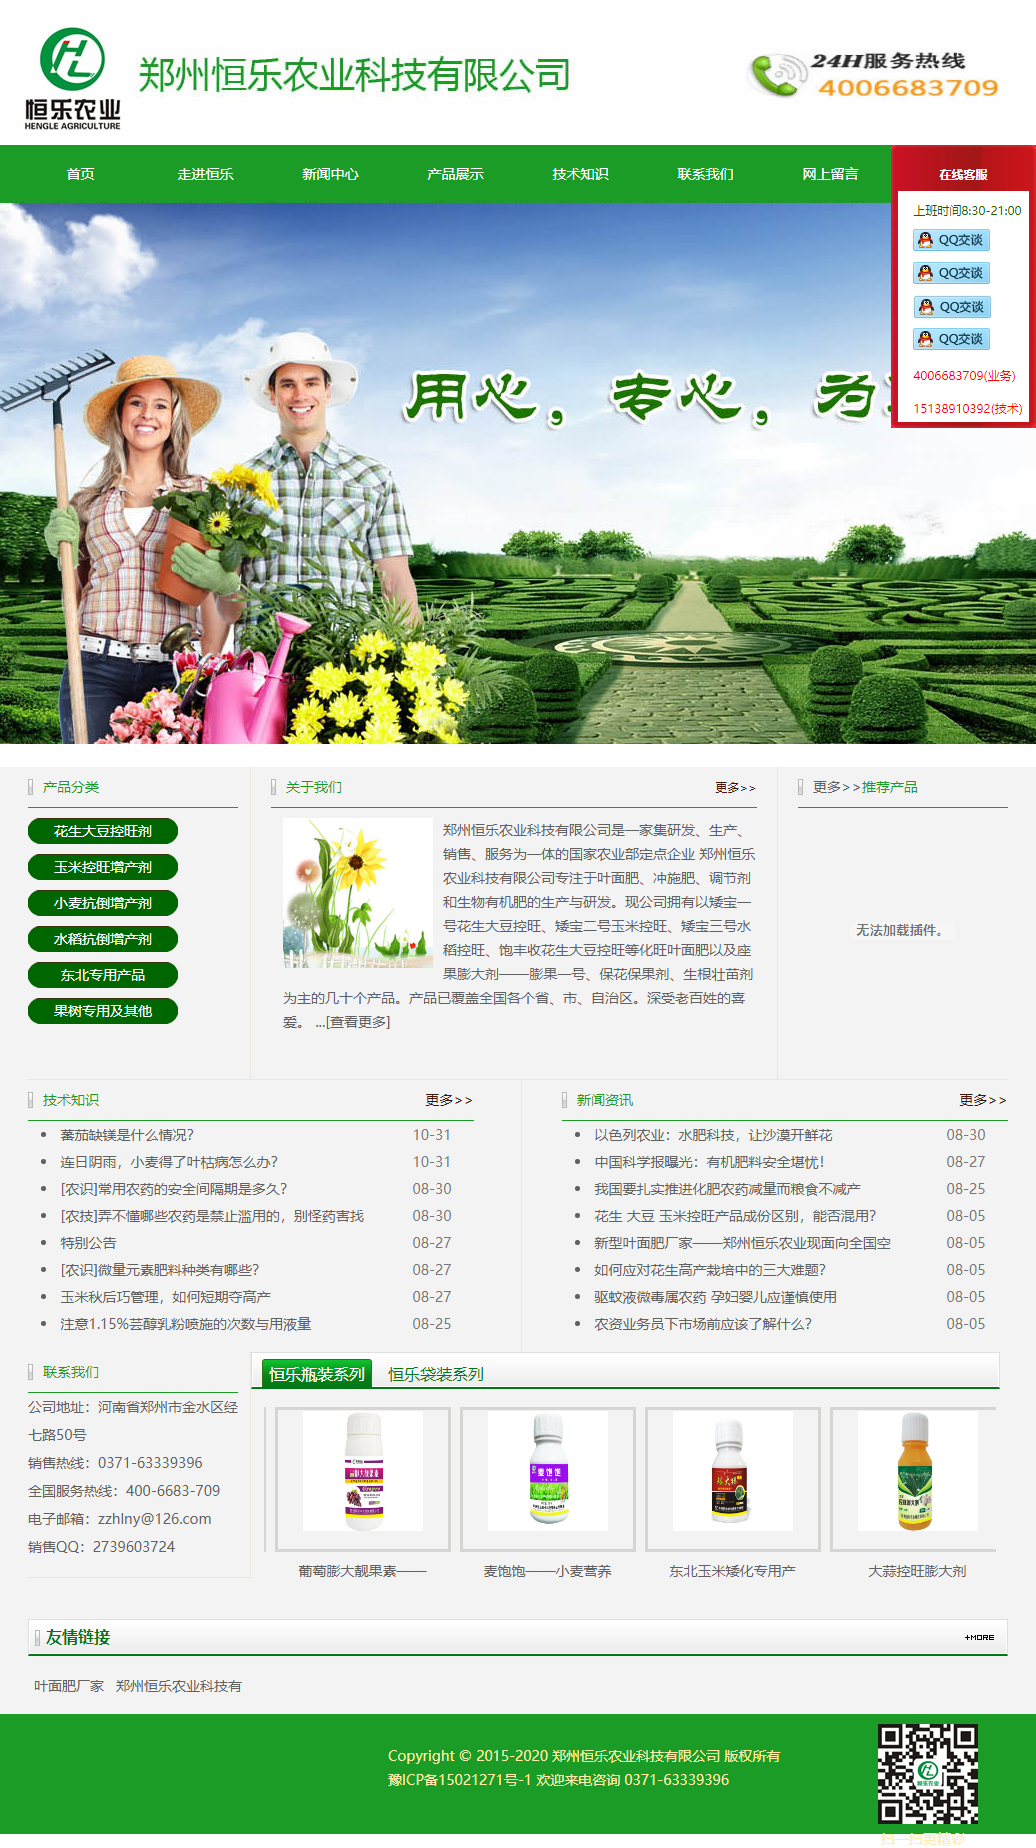 郑州恒乐农业科技有限公司网站案例